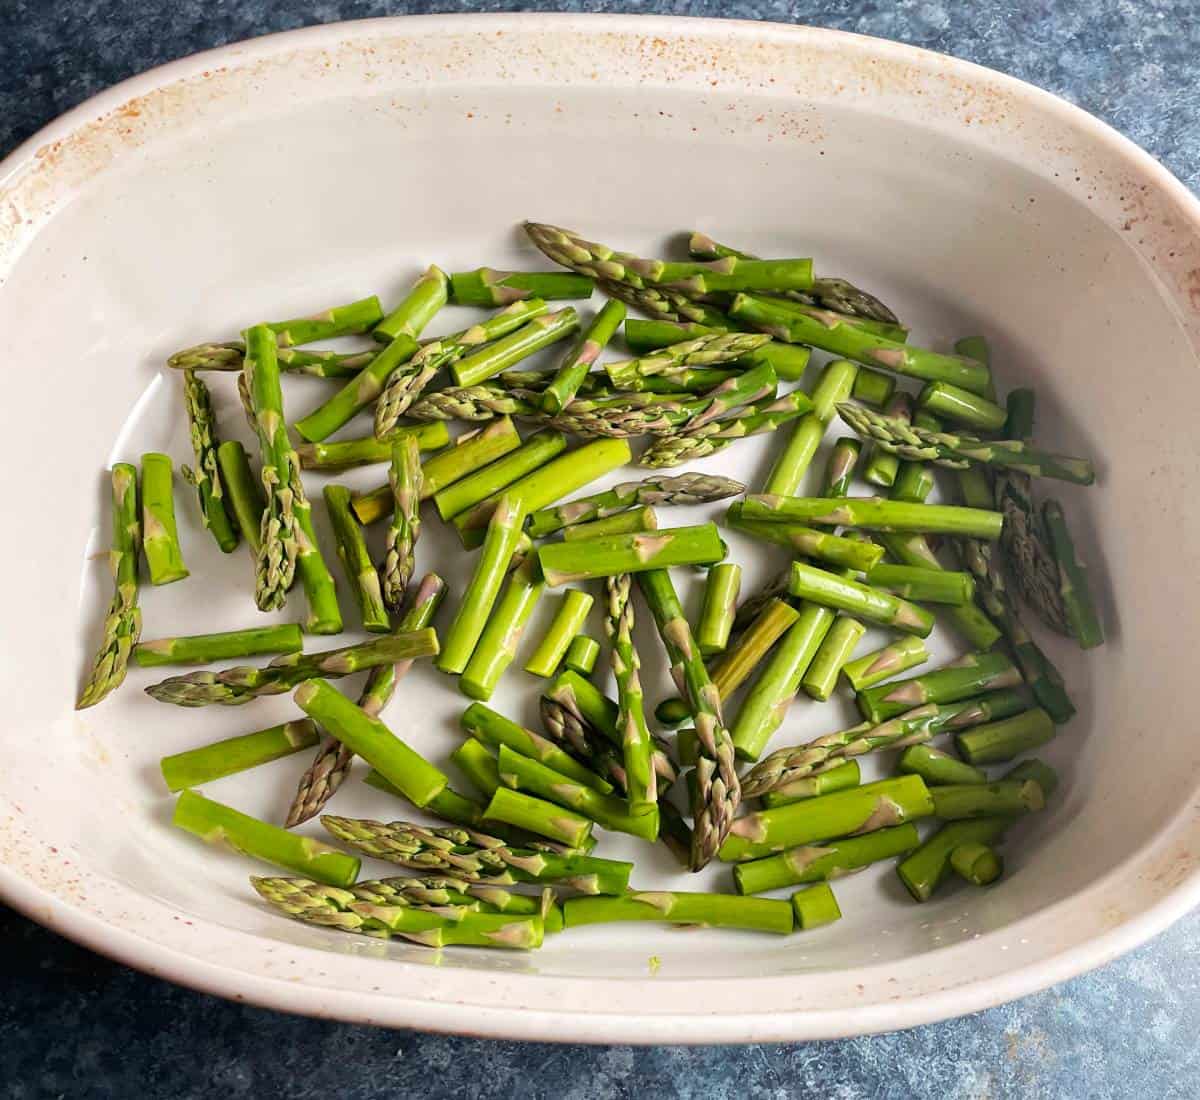 chopped asparagus arranged in a white baking dish.